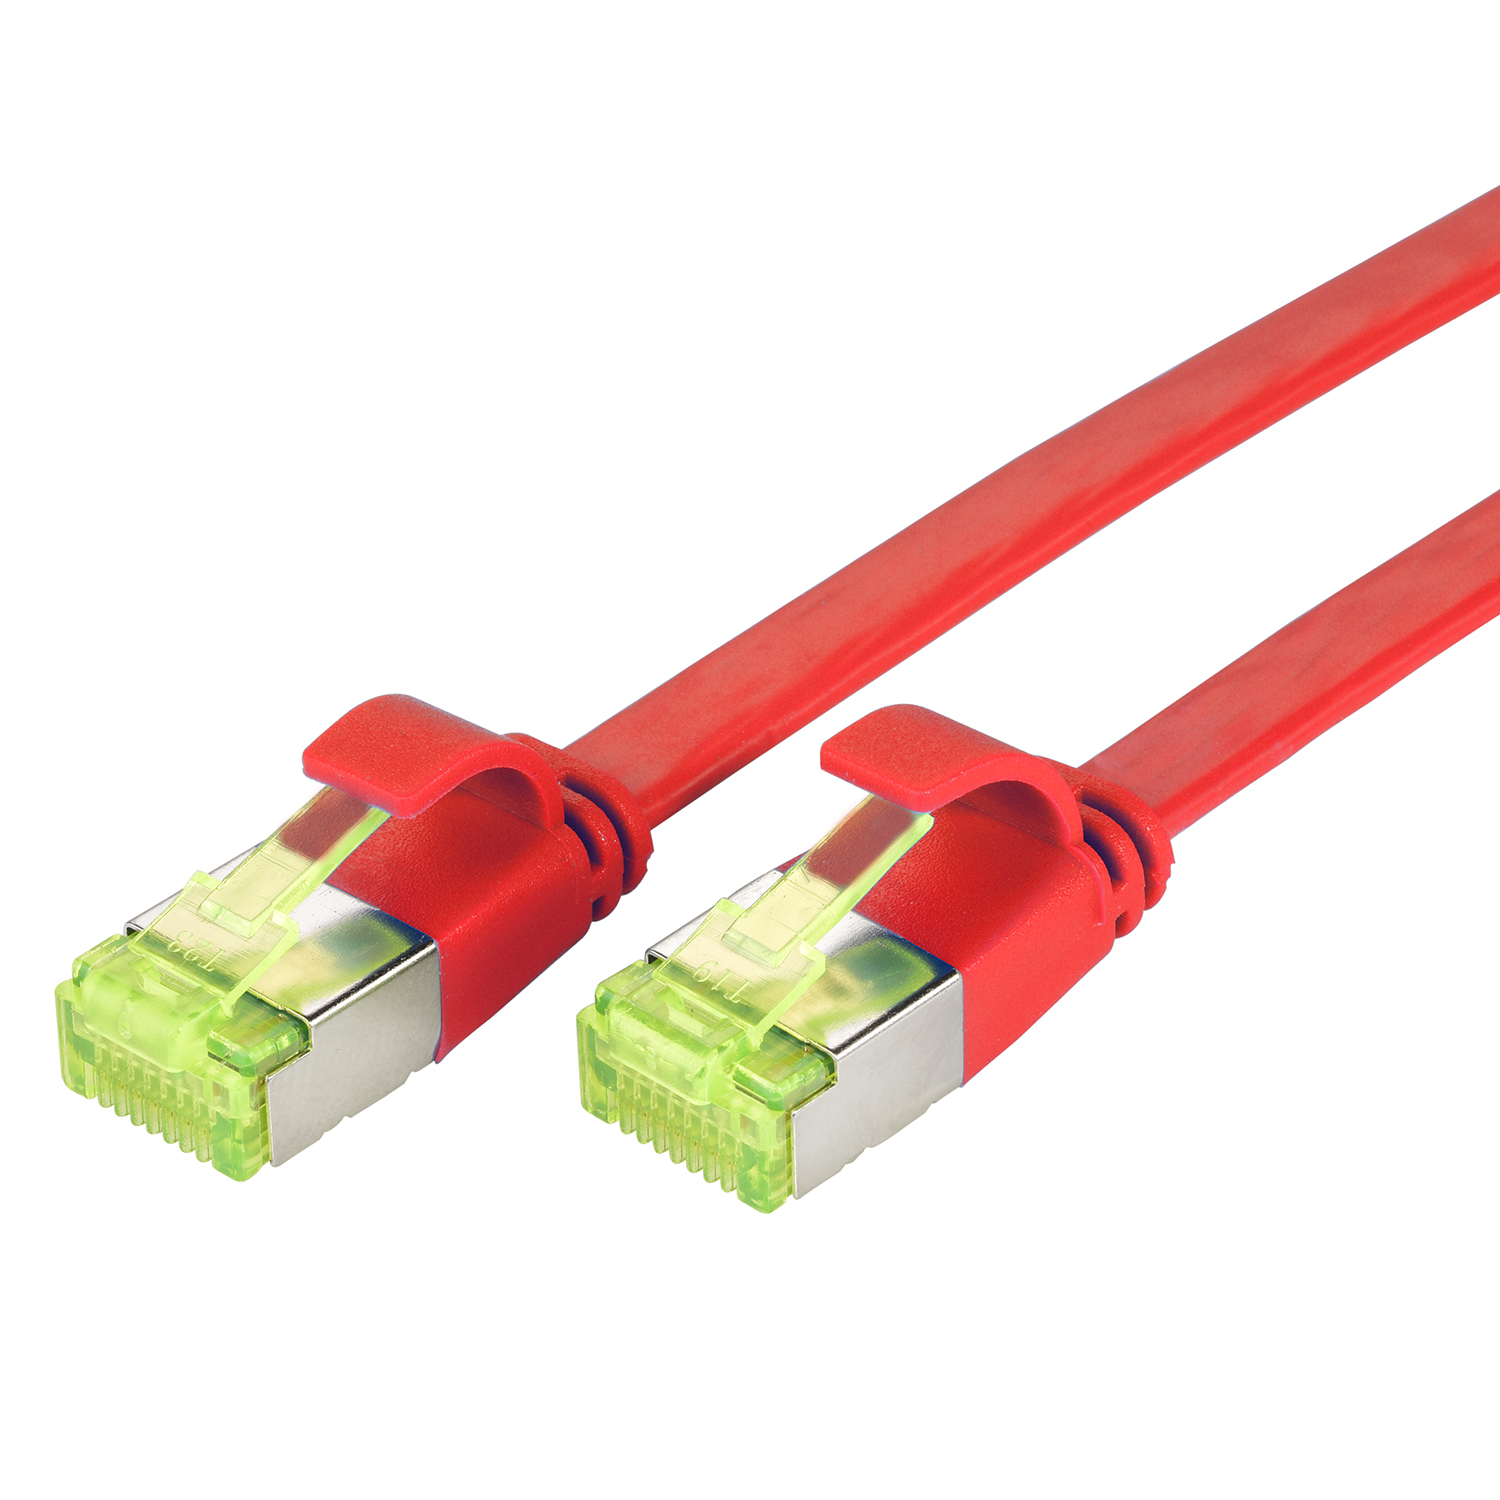 TPFNET 1m Patchkabel / Flachkabel Netzwerkkabel, 10 rot, m GBit, 1 U/FTP